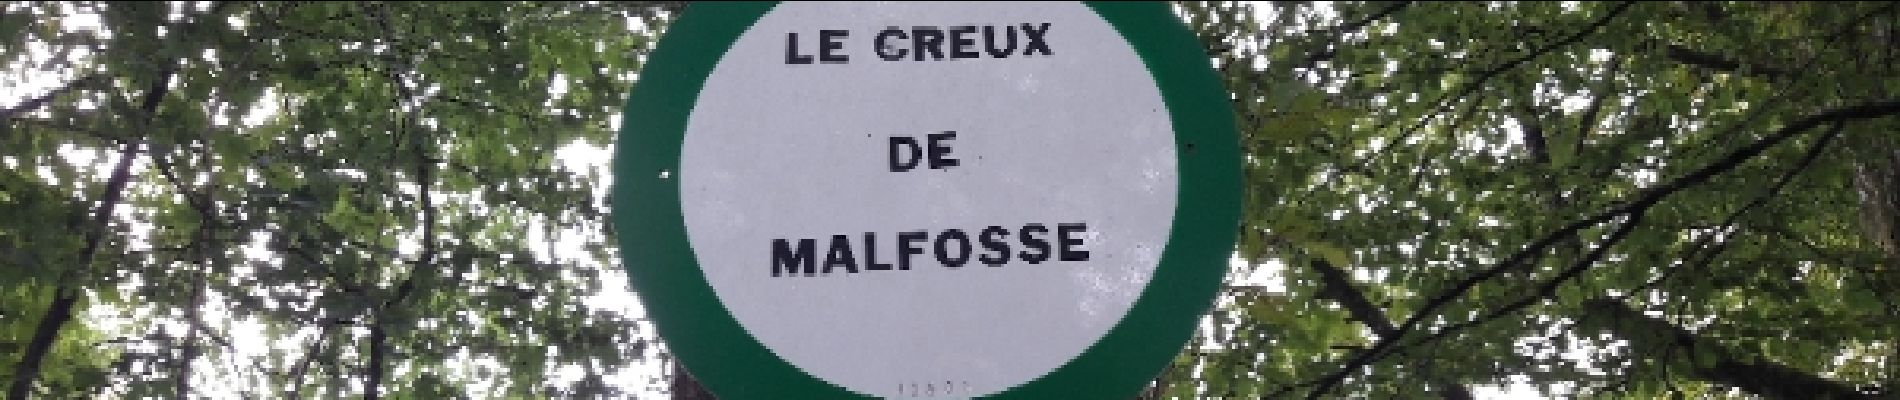 Point d'intérêt Badevel - Le Creux de Malefosse - Photo